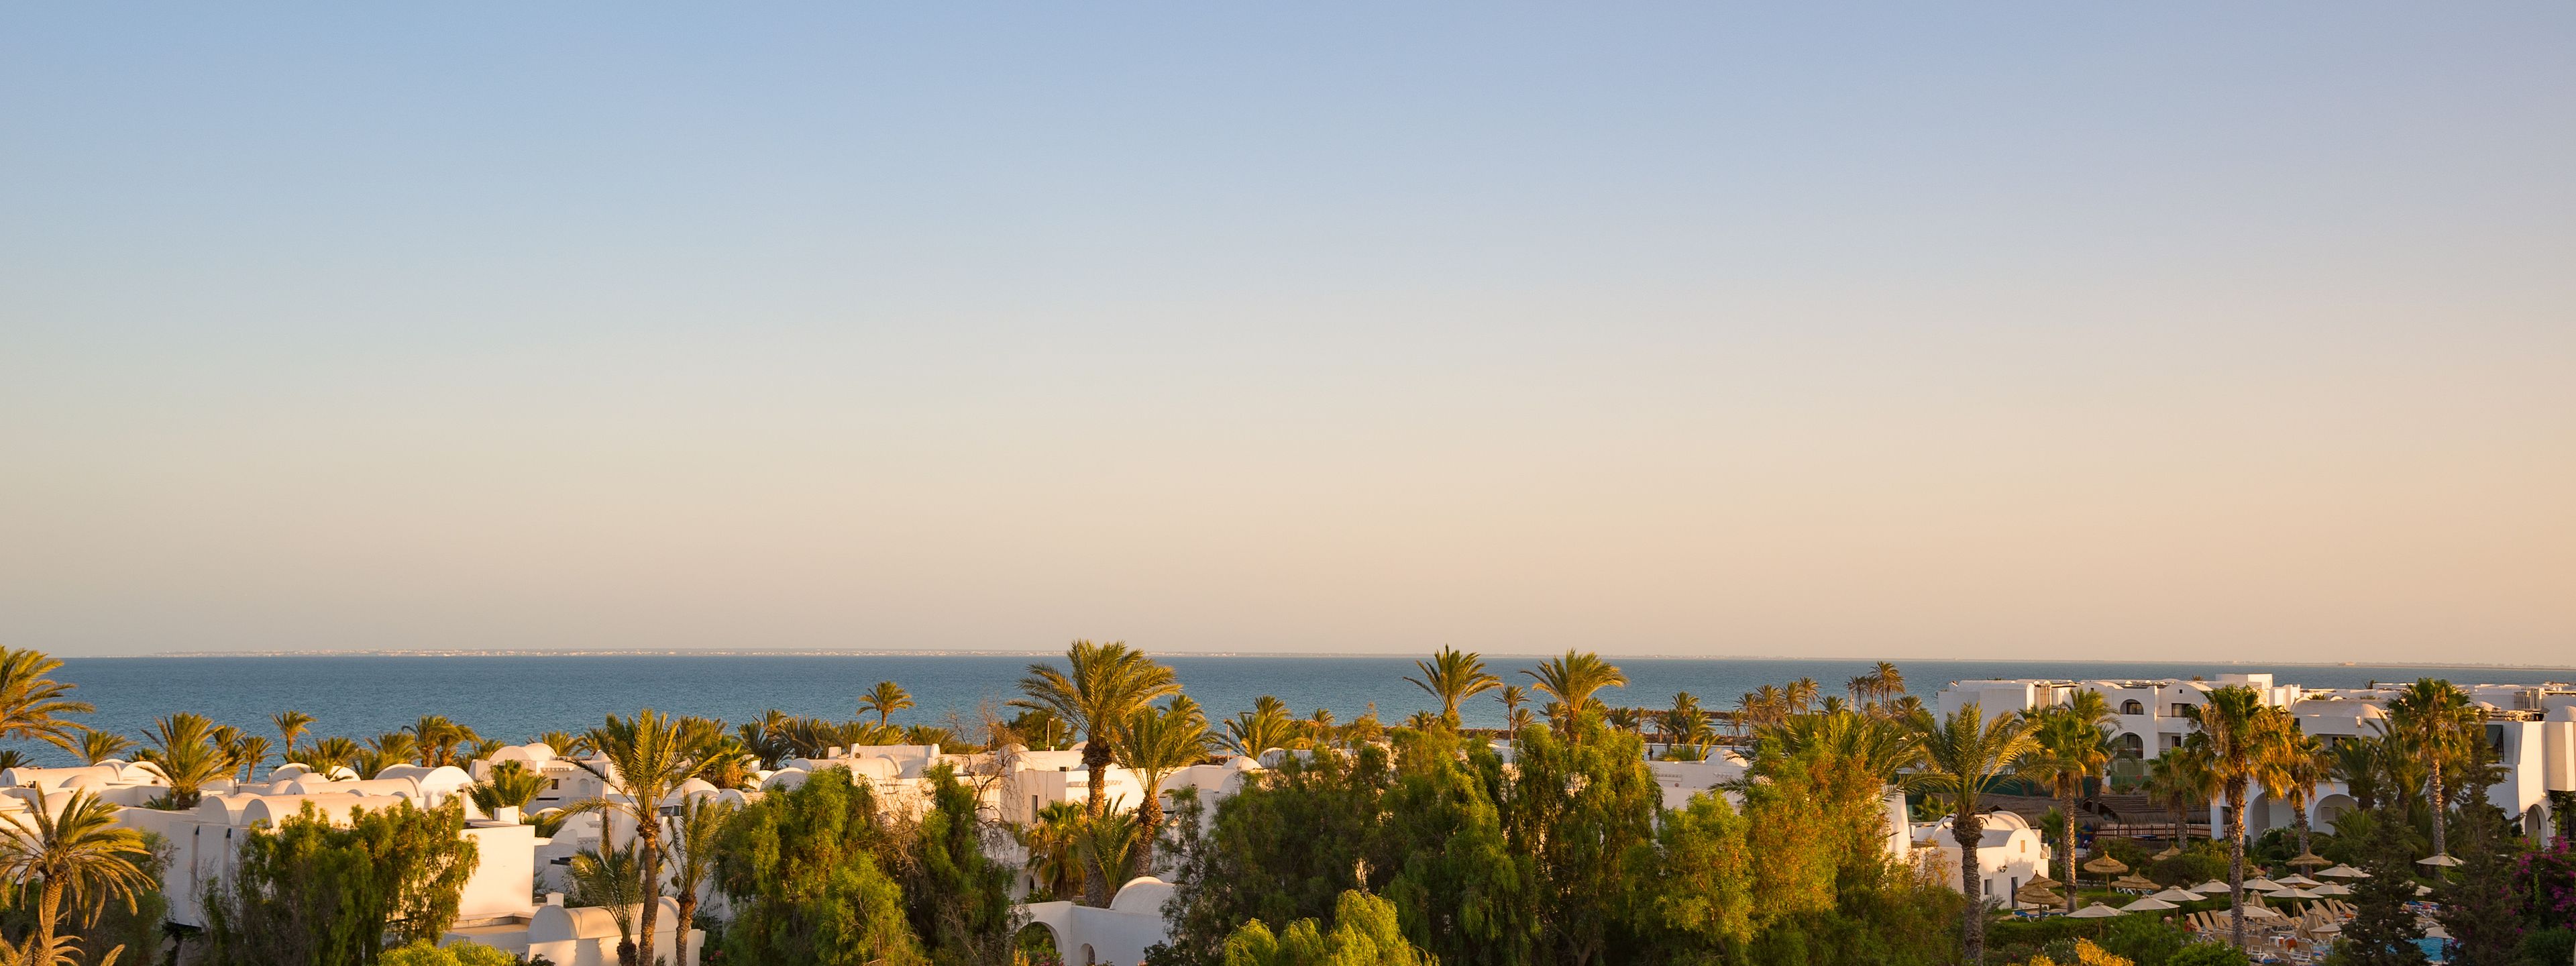 Diese Orte empfehlen sich für ein Wellnesshotel in Tunesien